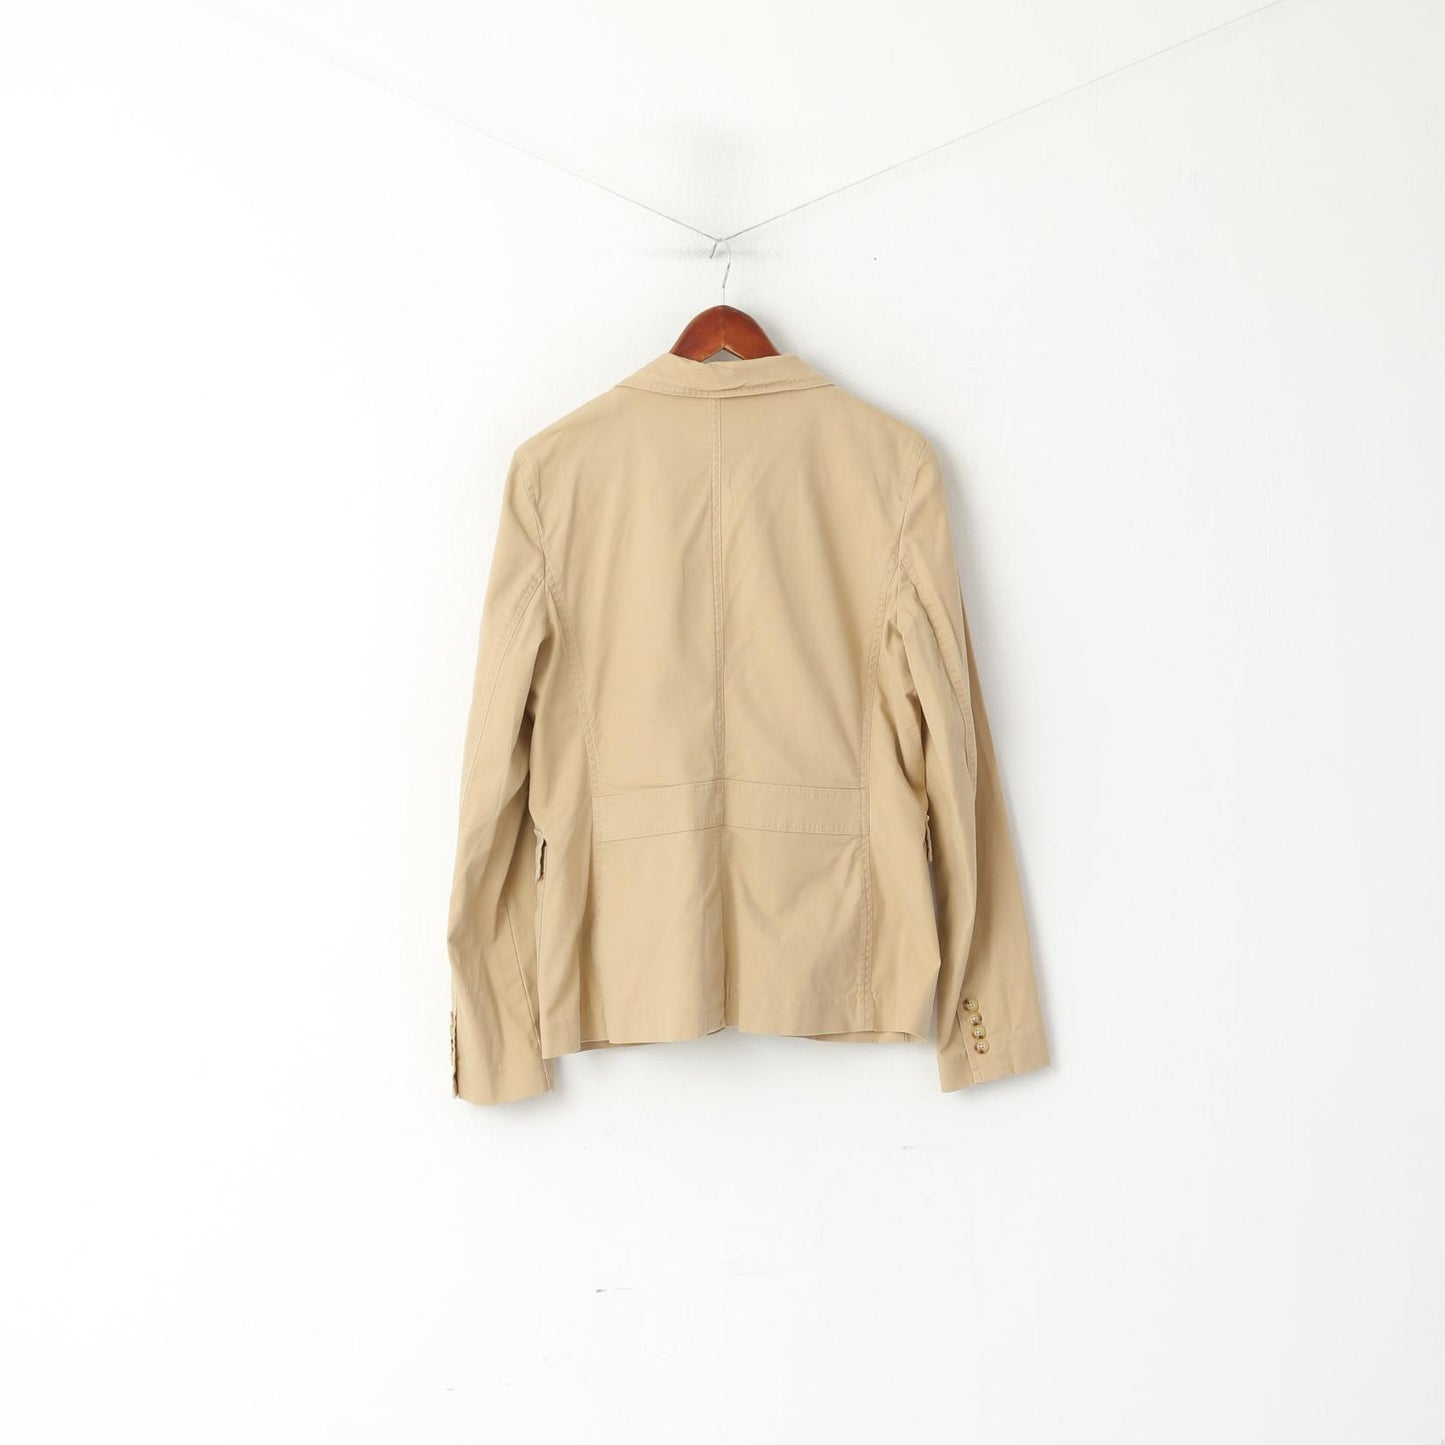 LAUREN Ralph Lauren Women 12 Blazer Beige Cotton Stretch Single Breasted Jacket